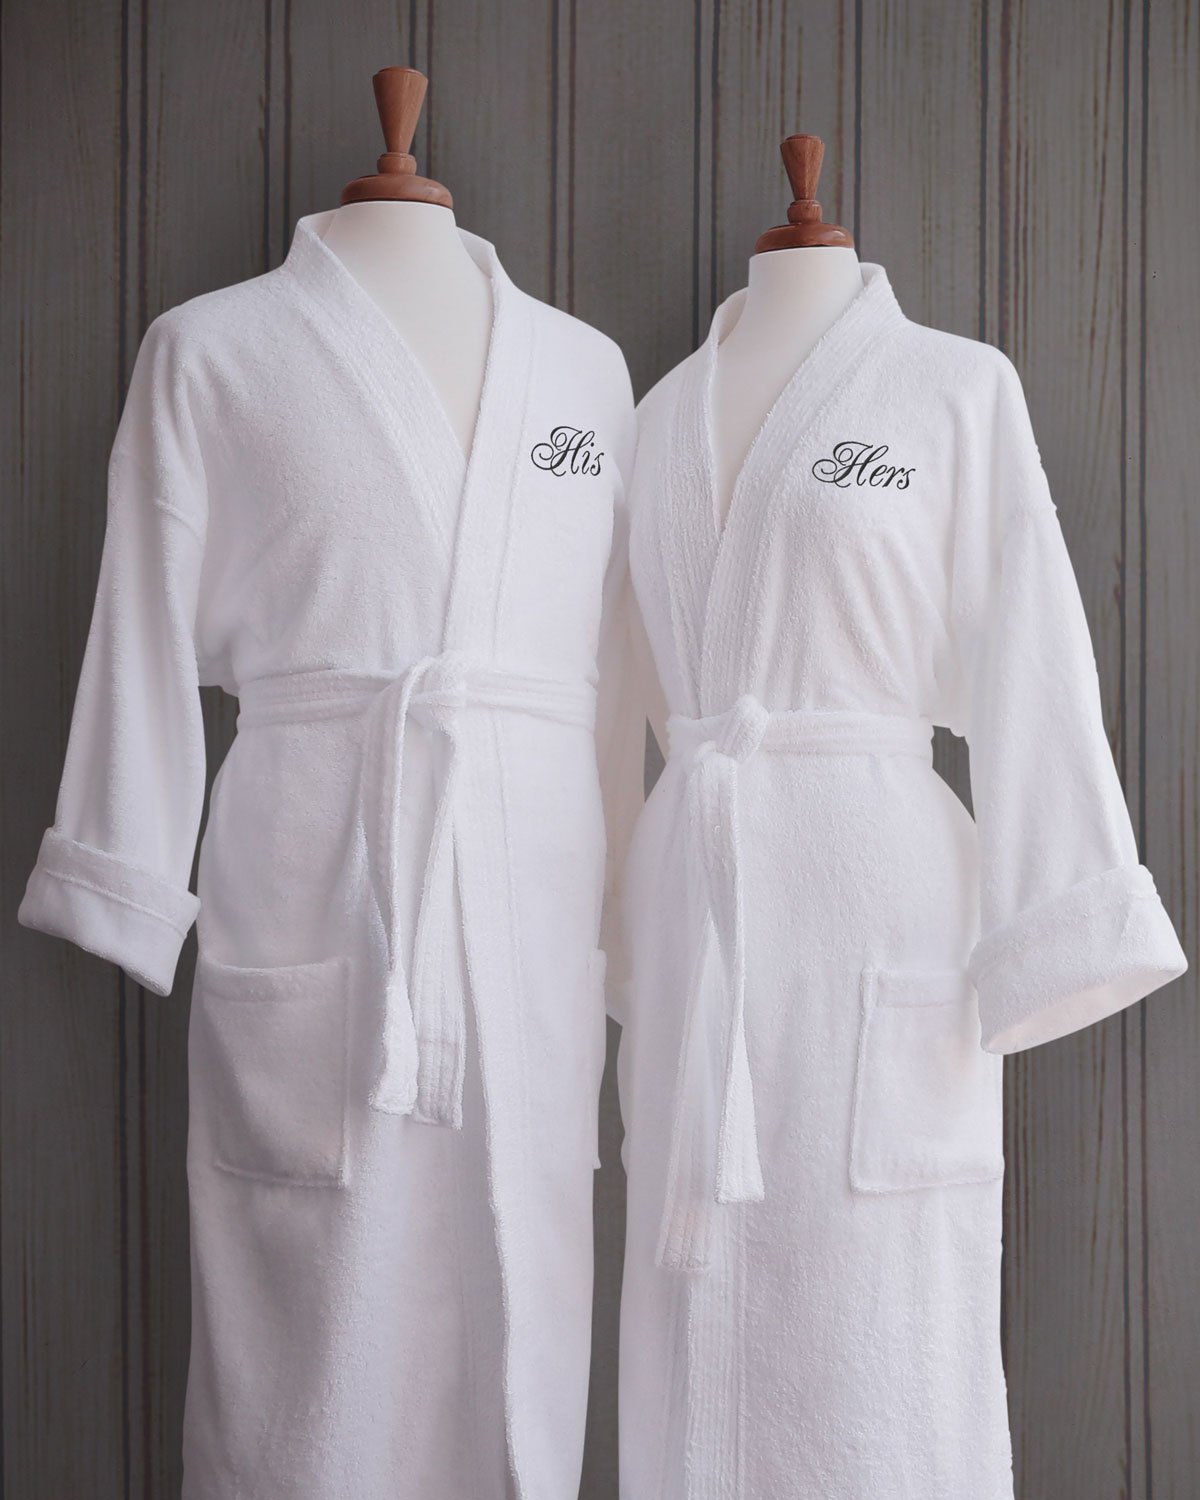 Bath robes